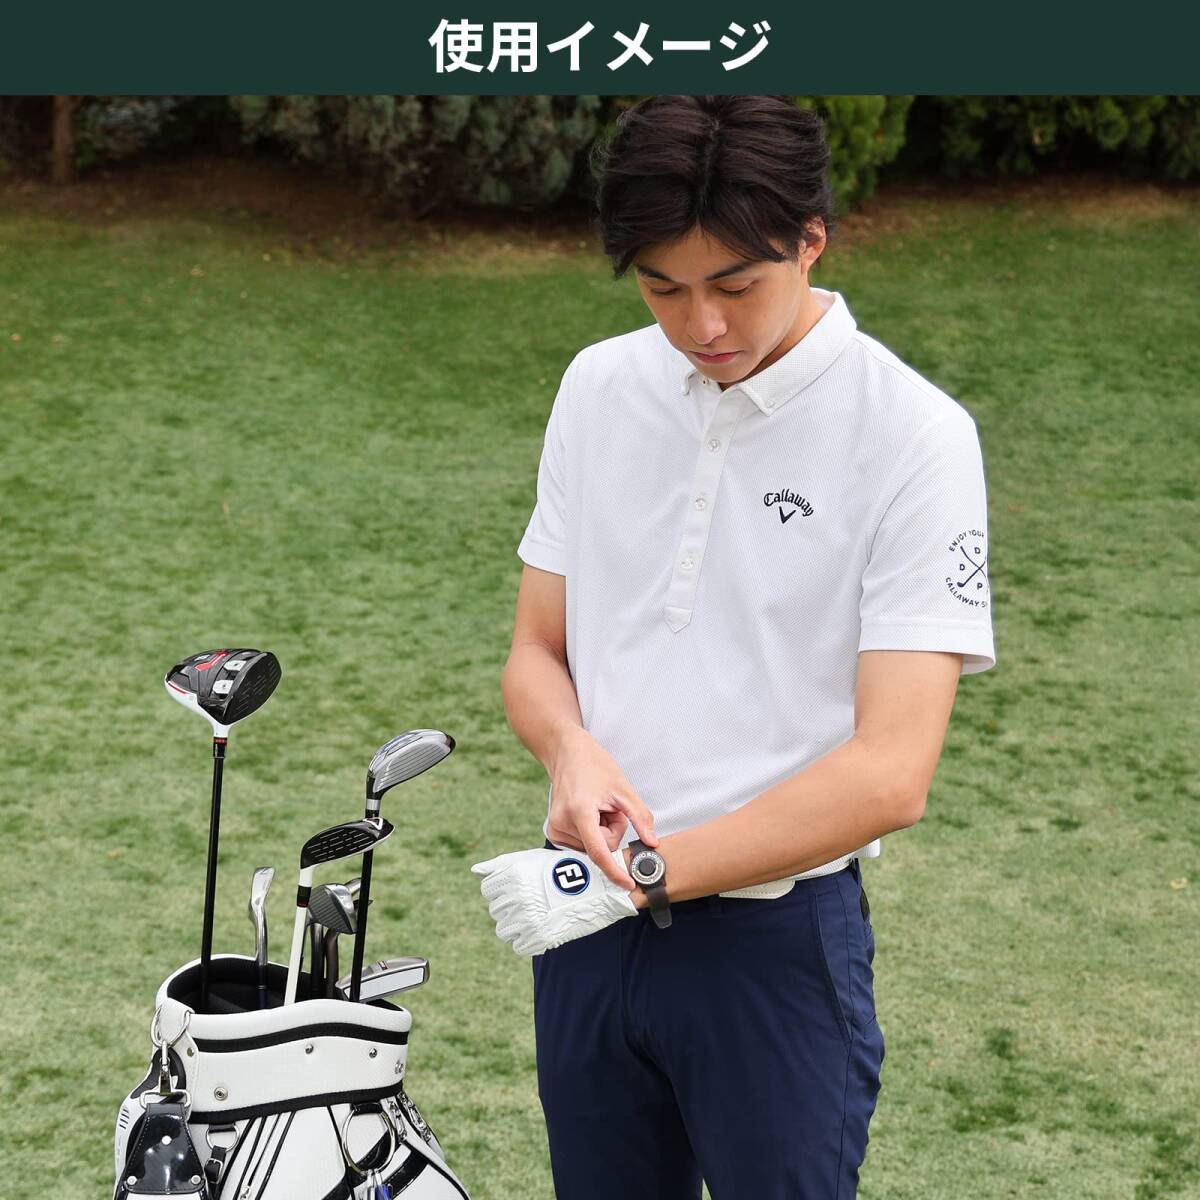 【人気商品】ゴルフ スコアカウンター 腕時計 ゴルフラウンド用品 Tabata(タバタ) ウォッチスコアカウンターIII GV09_画像3